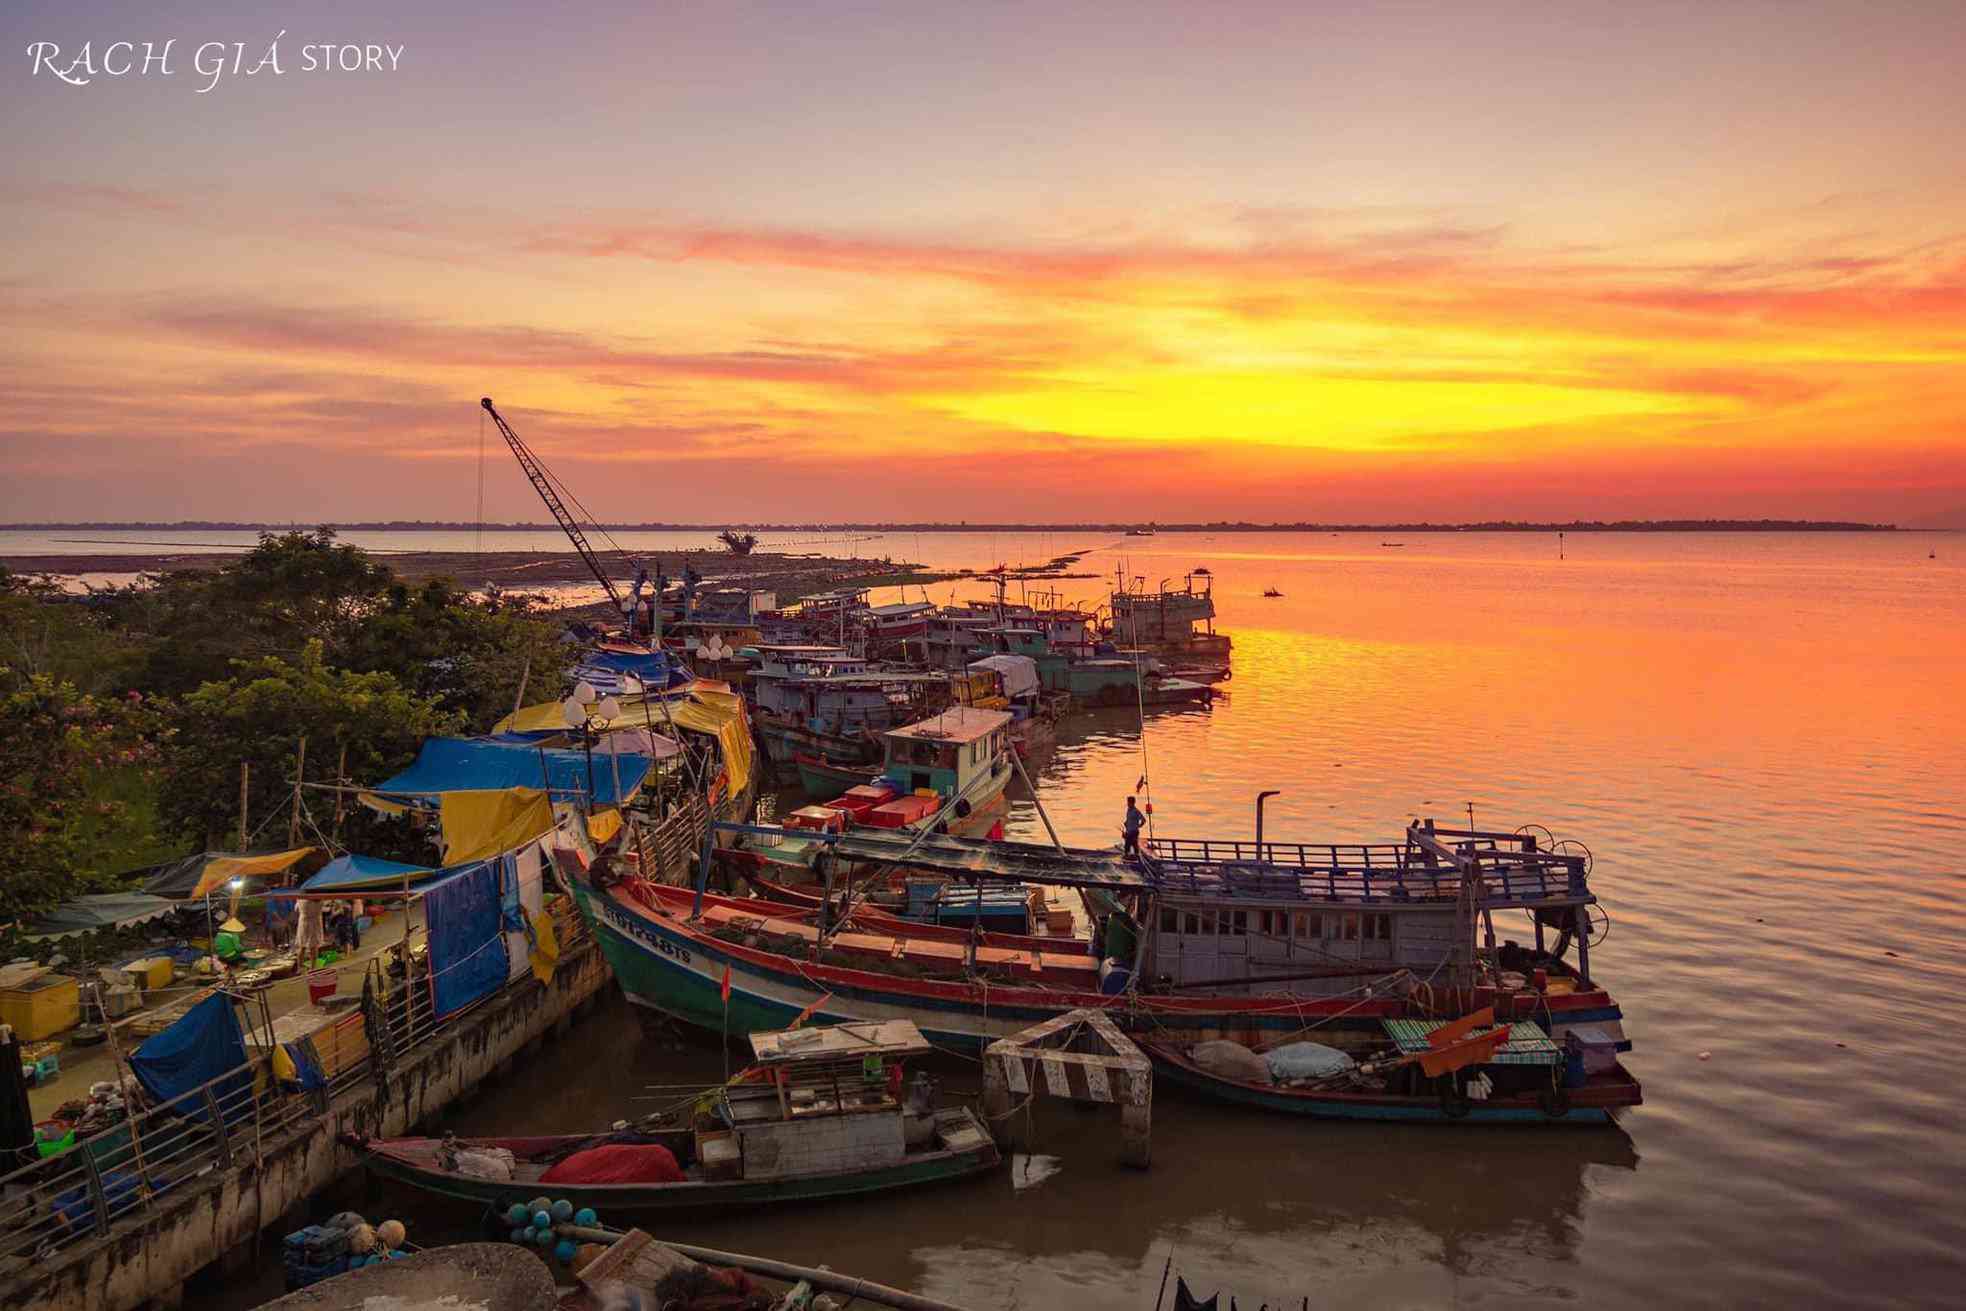 Cảnh hoàng hôn Rạch Giá được ví như một bức tranh sống động, tuyệt đẹp với những tia nắng cuối cùng chiếu sáng trên vùng đất nước Mekong. Hãy xem những khoảnh khắc đẹp trong ảnh này và cảm nhận ngay sự yên tĩnh và thanh bình của cảnh vật.